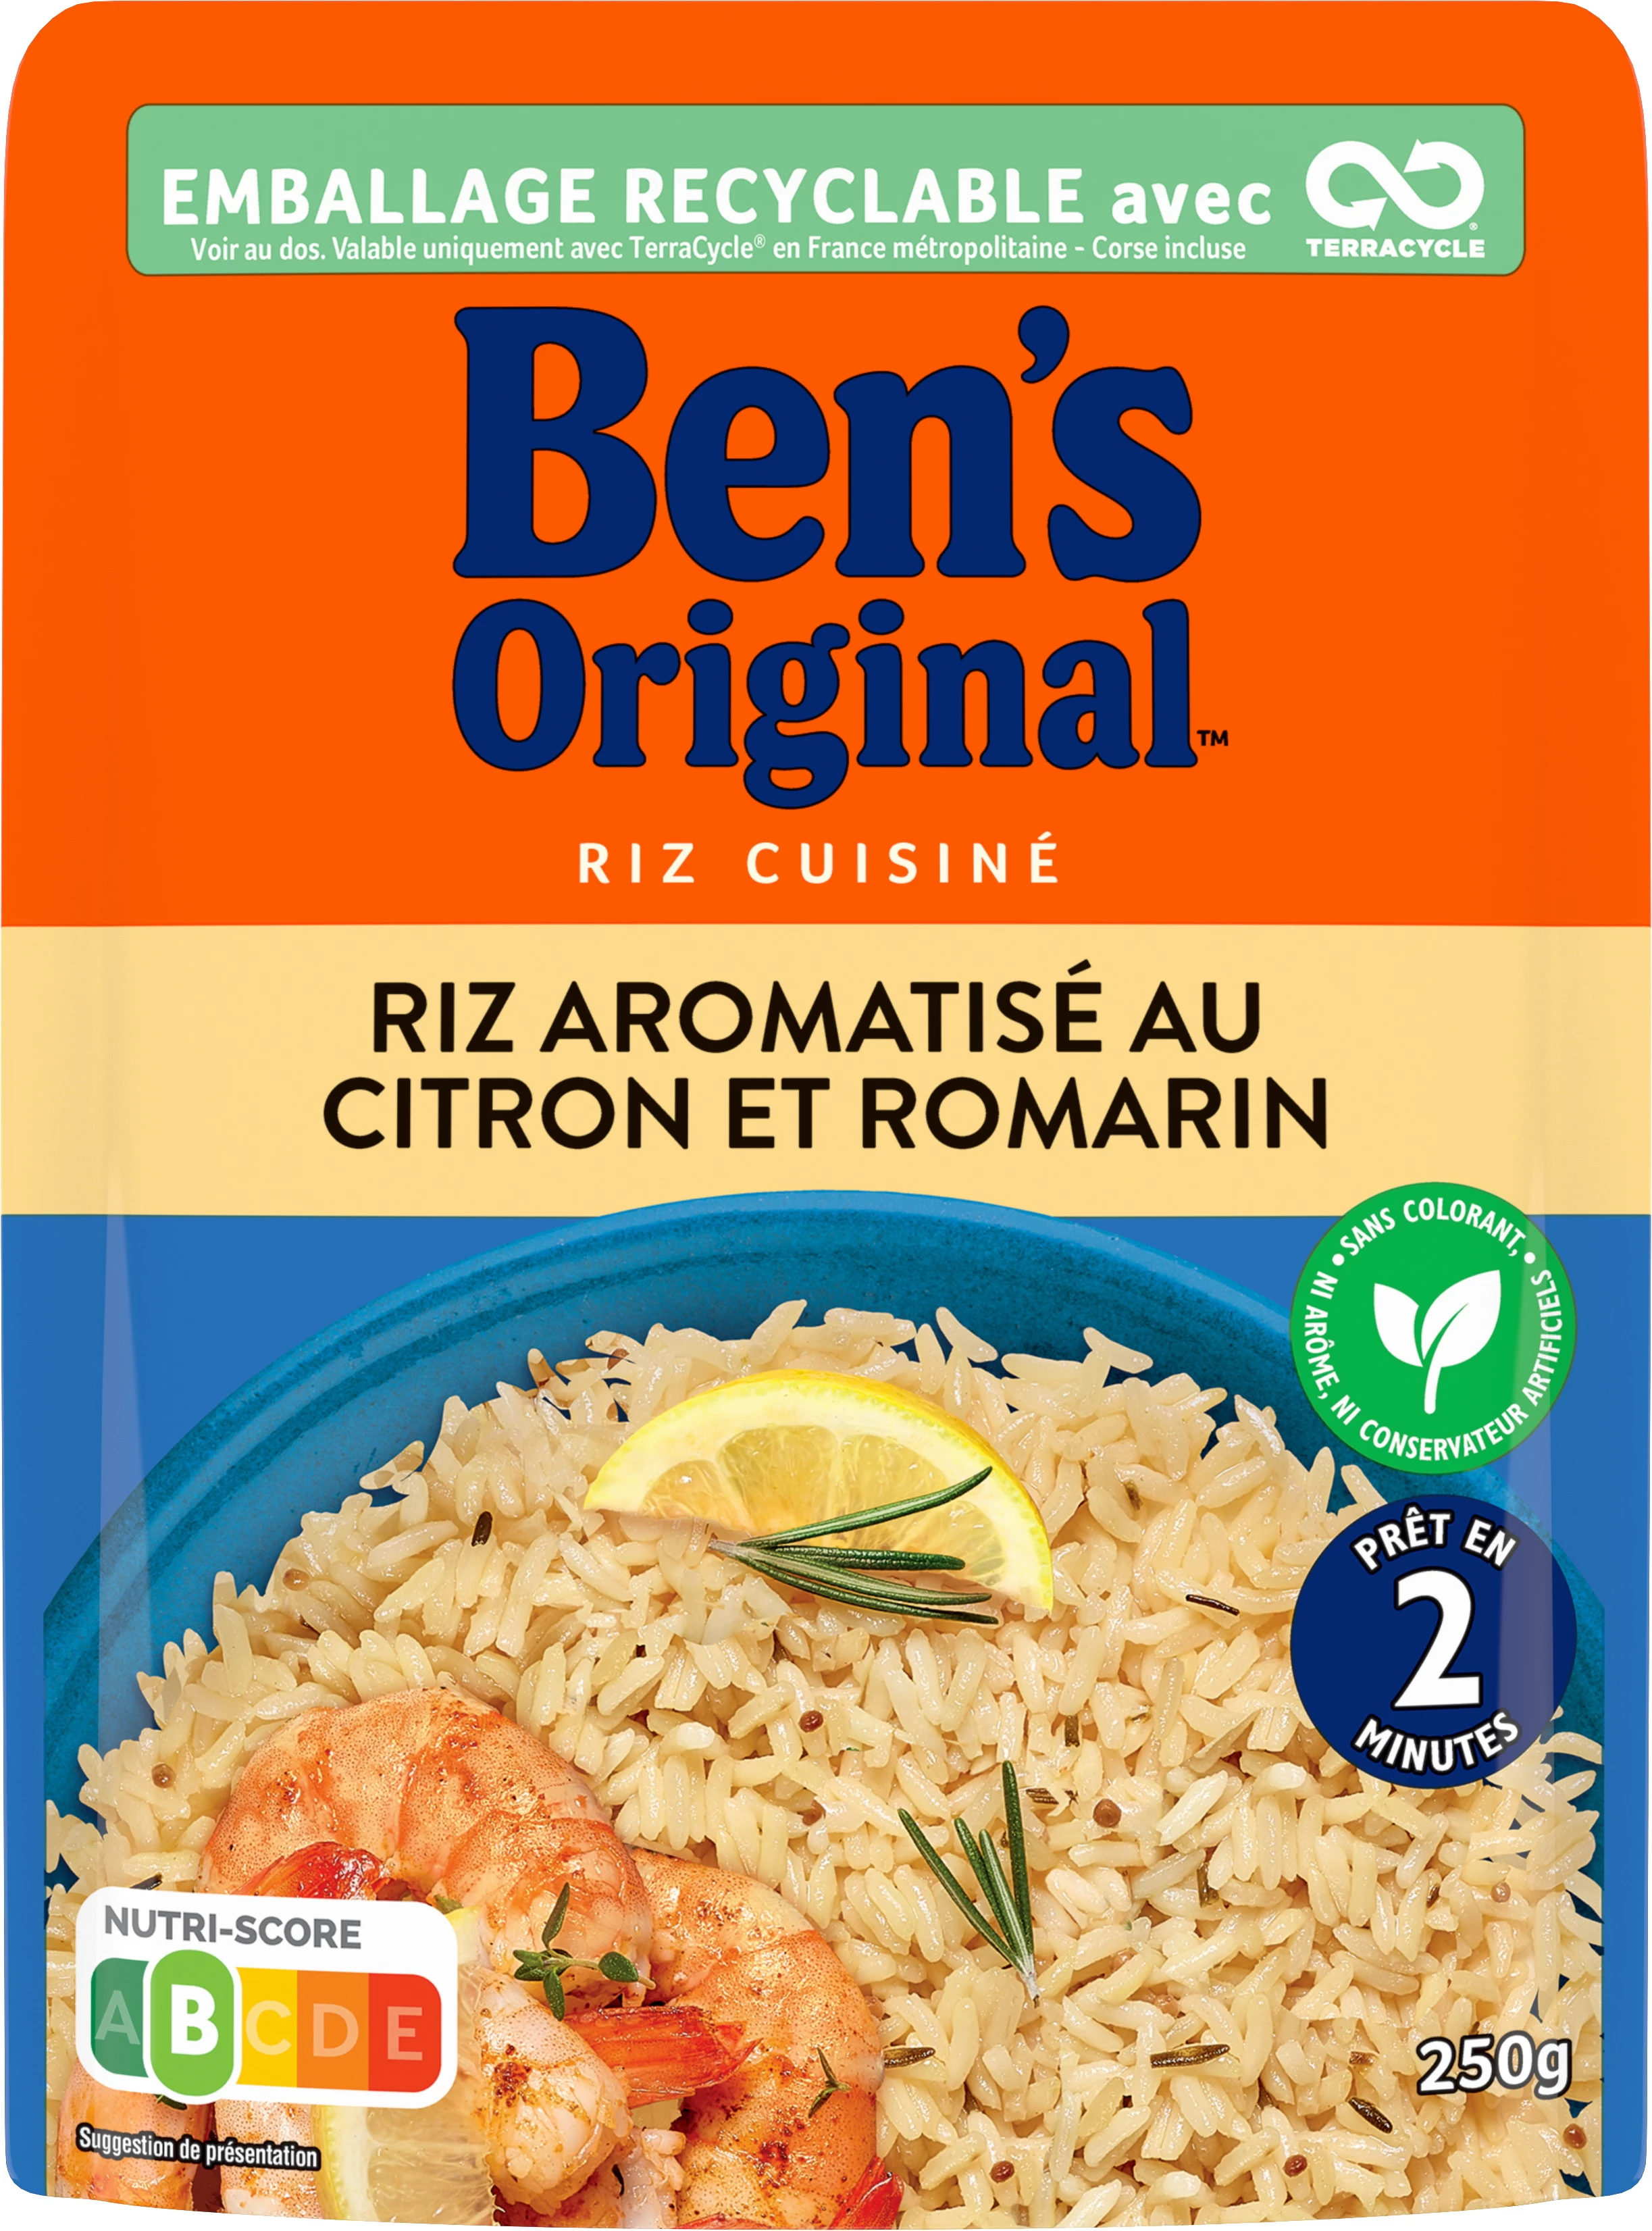 Riz Micro-ondes express Citron & romarin, 250g - BEN'S Original